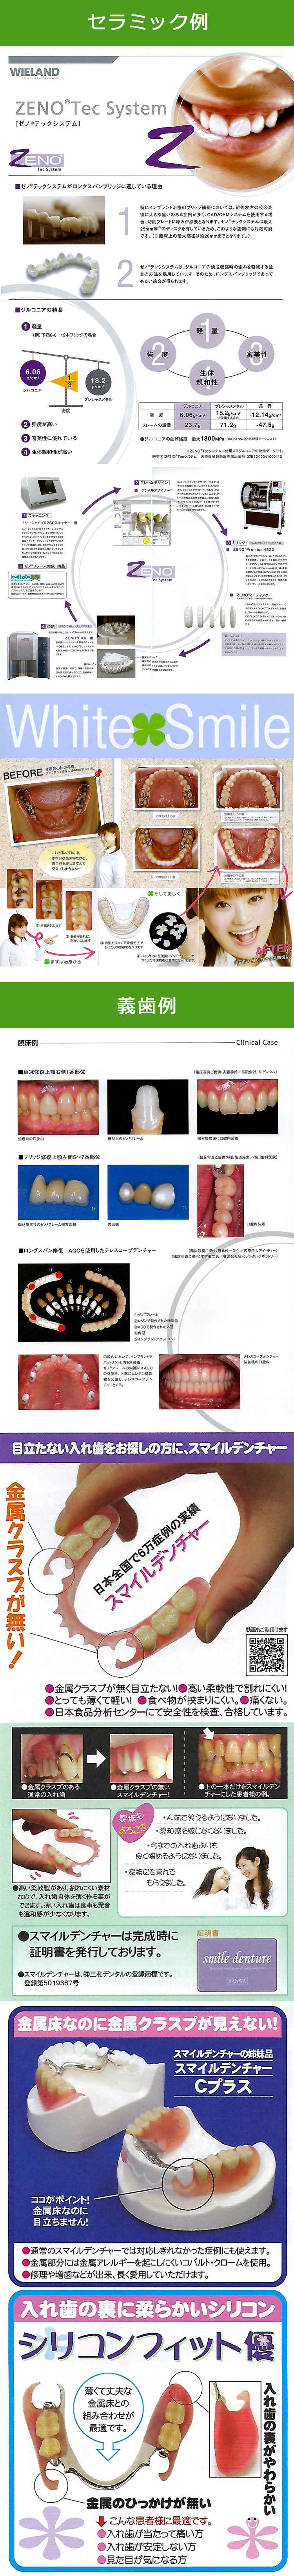 中島歯科クリニックのお知らせ内容